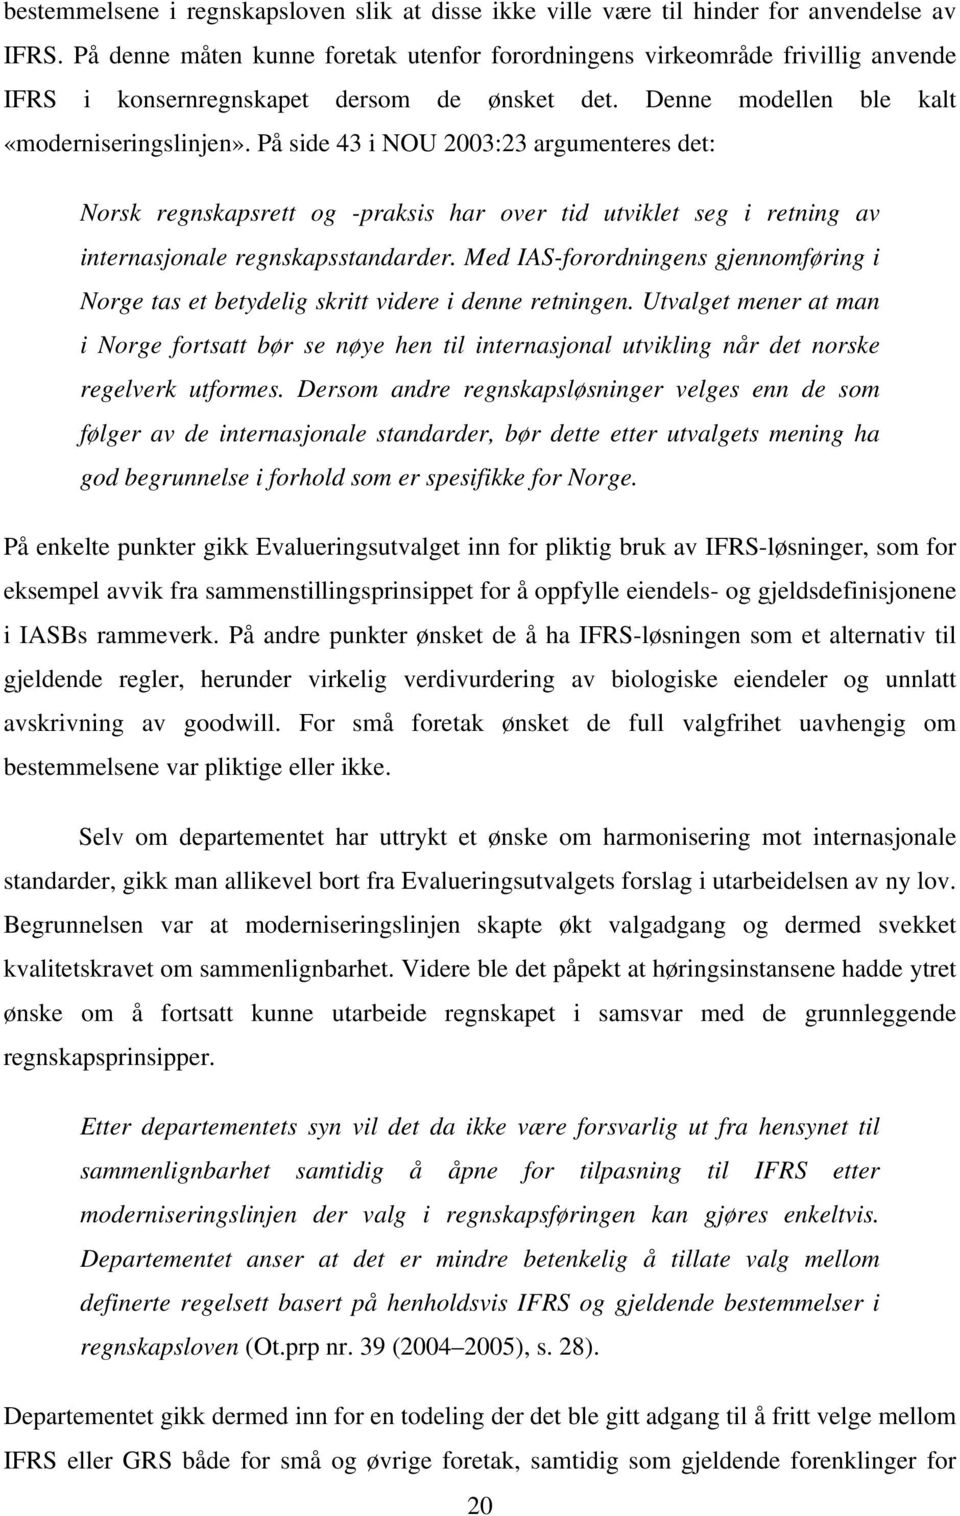 På side 43 i NOU 2003:23 argumenteres det: Norsk regnskapsrett og -praksis har over tid utviklet seg i retning av internasjonale regnskapsstandarder.